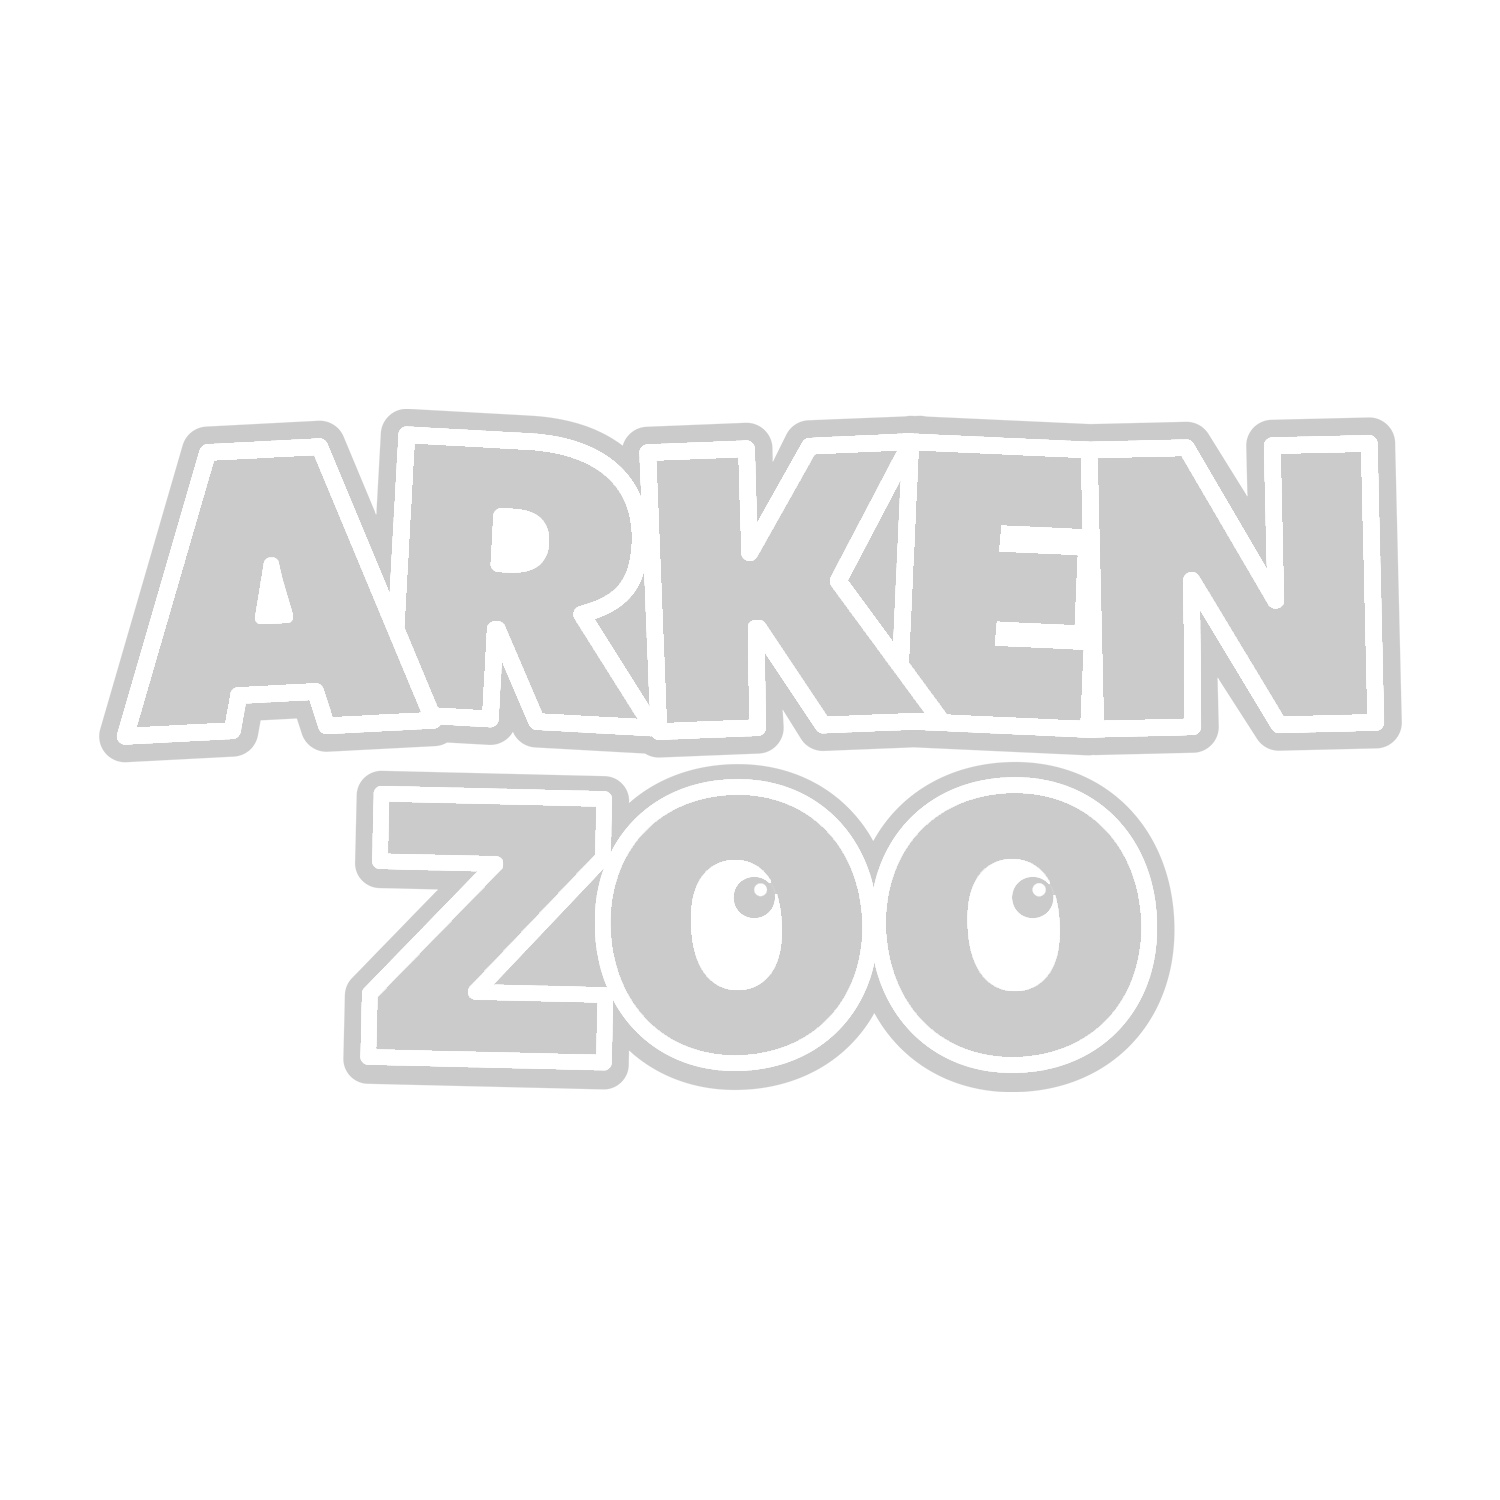 Arken zoo